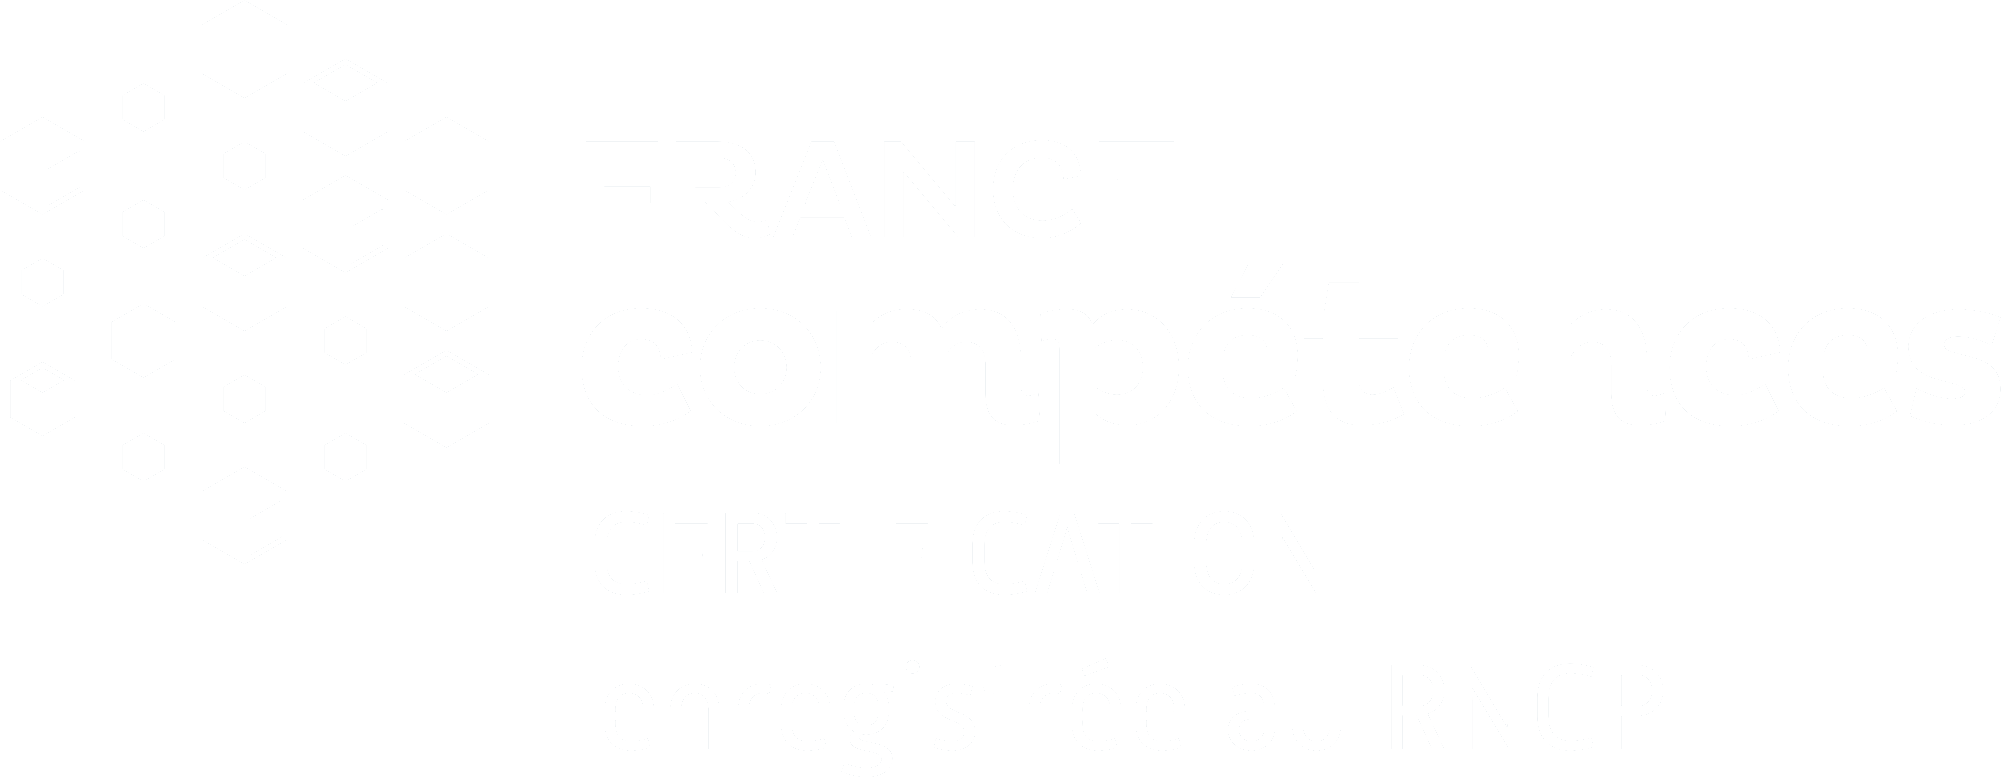 AGR, L'École de l'Image - Titre de Niveau 7 enregistré au RNCP - France Compétences